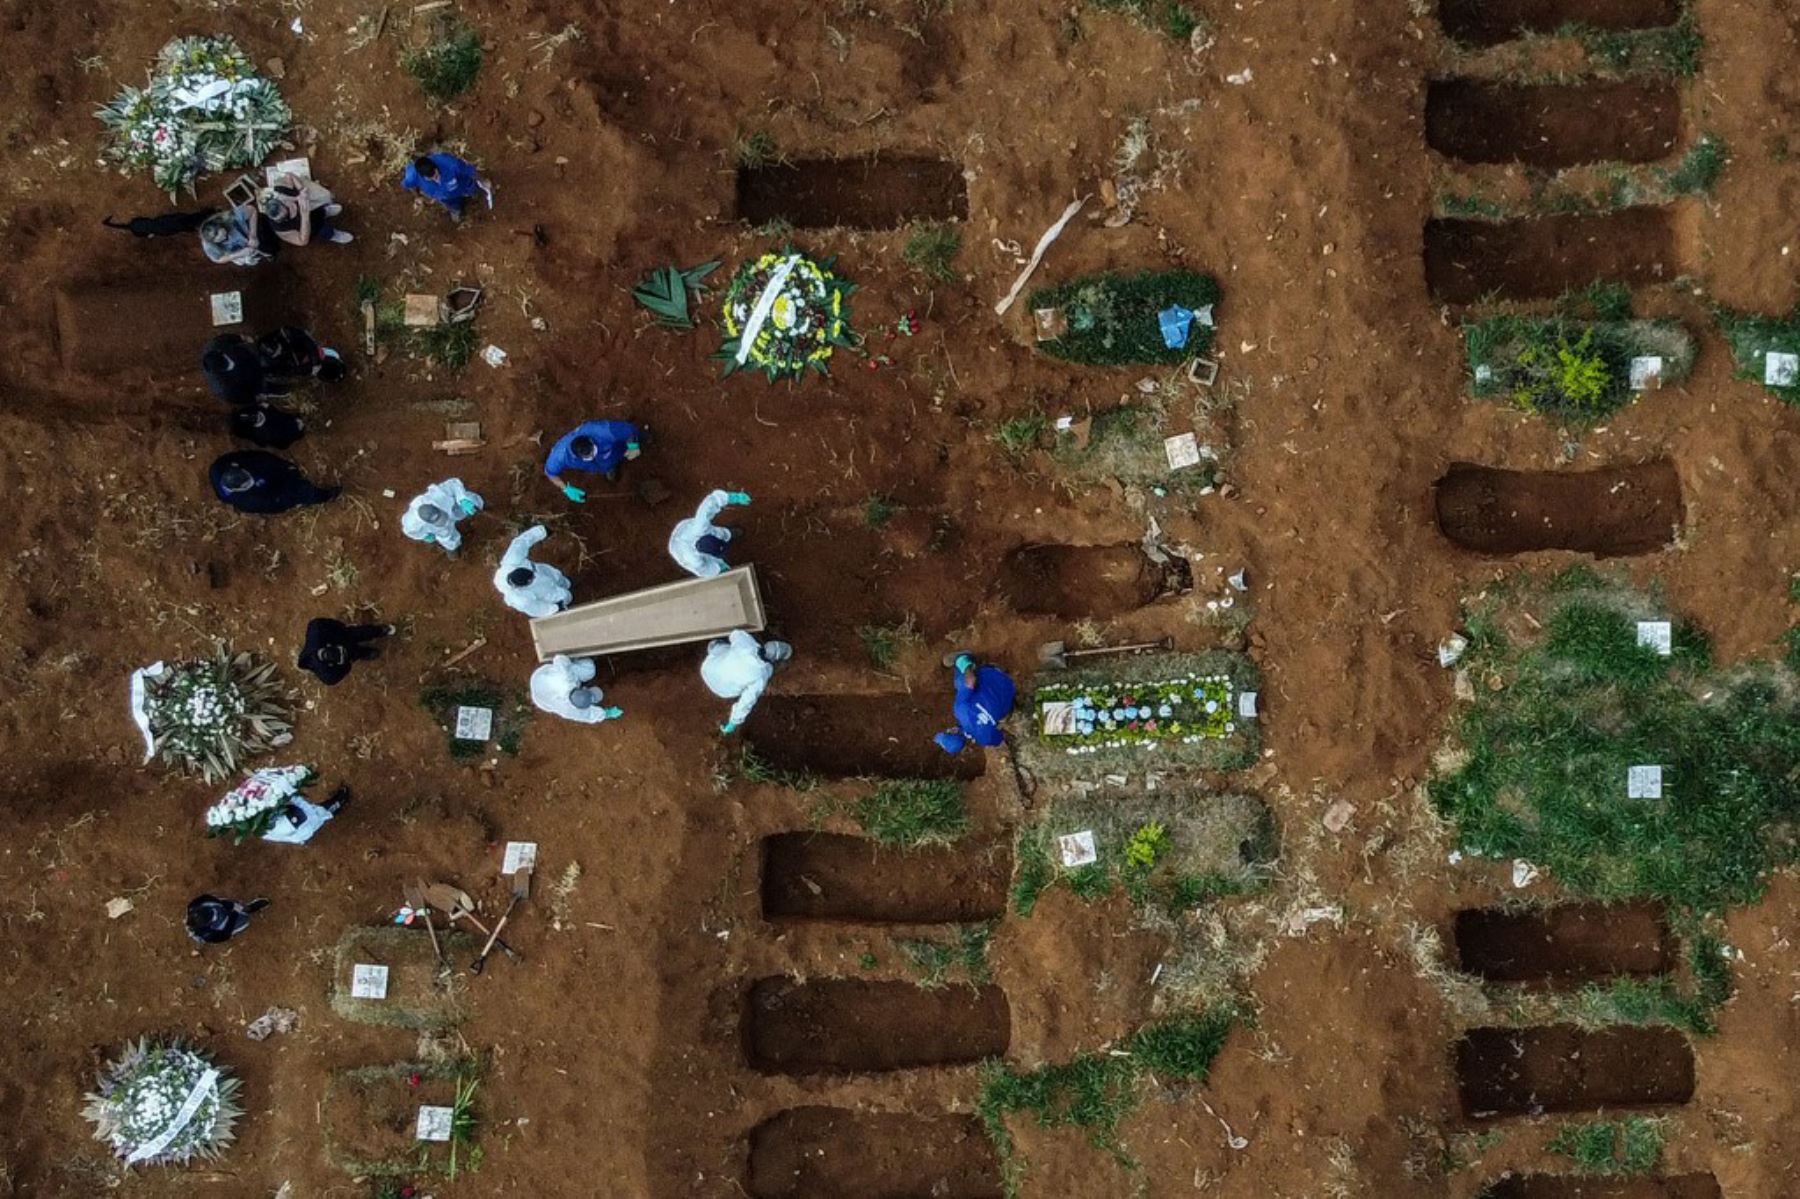 Imagen aérea que muestra el entierro de una presunta víctima de covid-19 en el cementerio de Vila Formosa, en las afueras de Sao Paulo, Brasil.
Foto: AFP